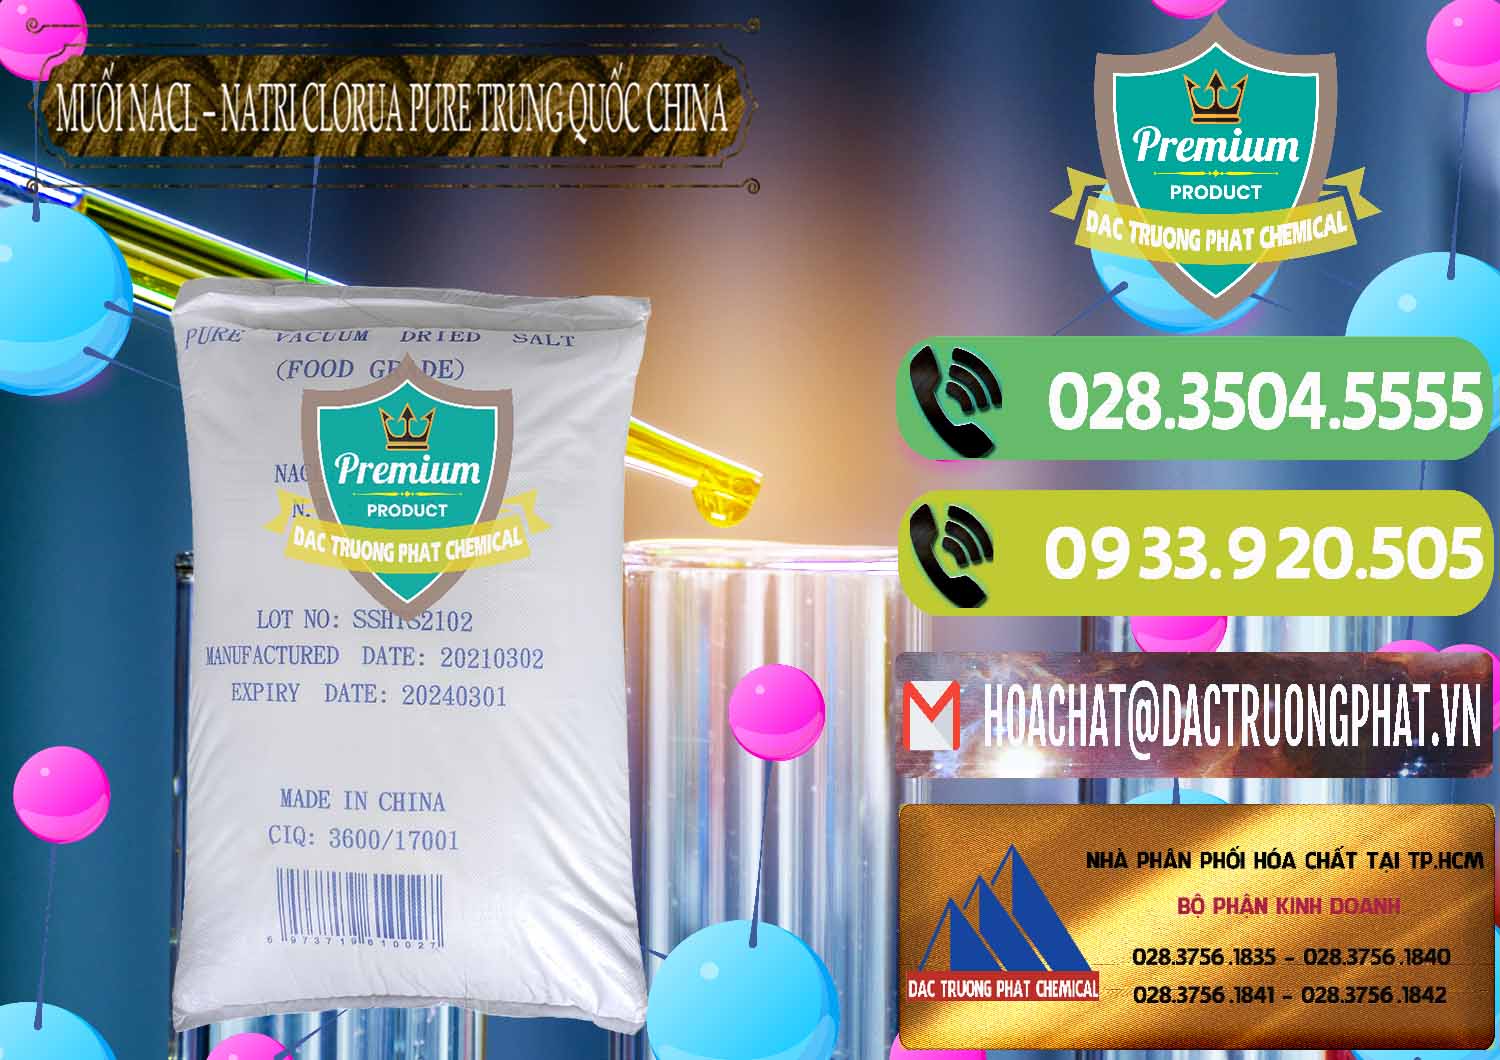 Cty chuyên bán & phân phối Muối NaCL – Sodium Chloride Pure Trung Quốc China - 0230 - Công ty nhập khẩu - cung cấp hóa chất tại TP.HCM - hoachatmientay.vn